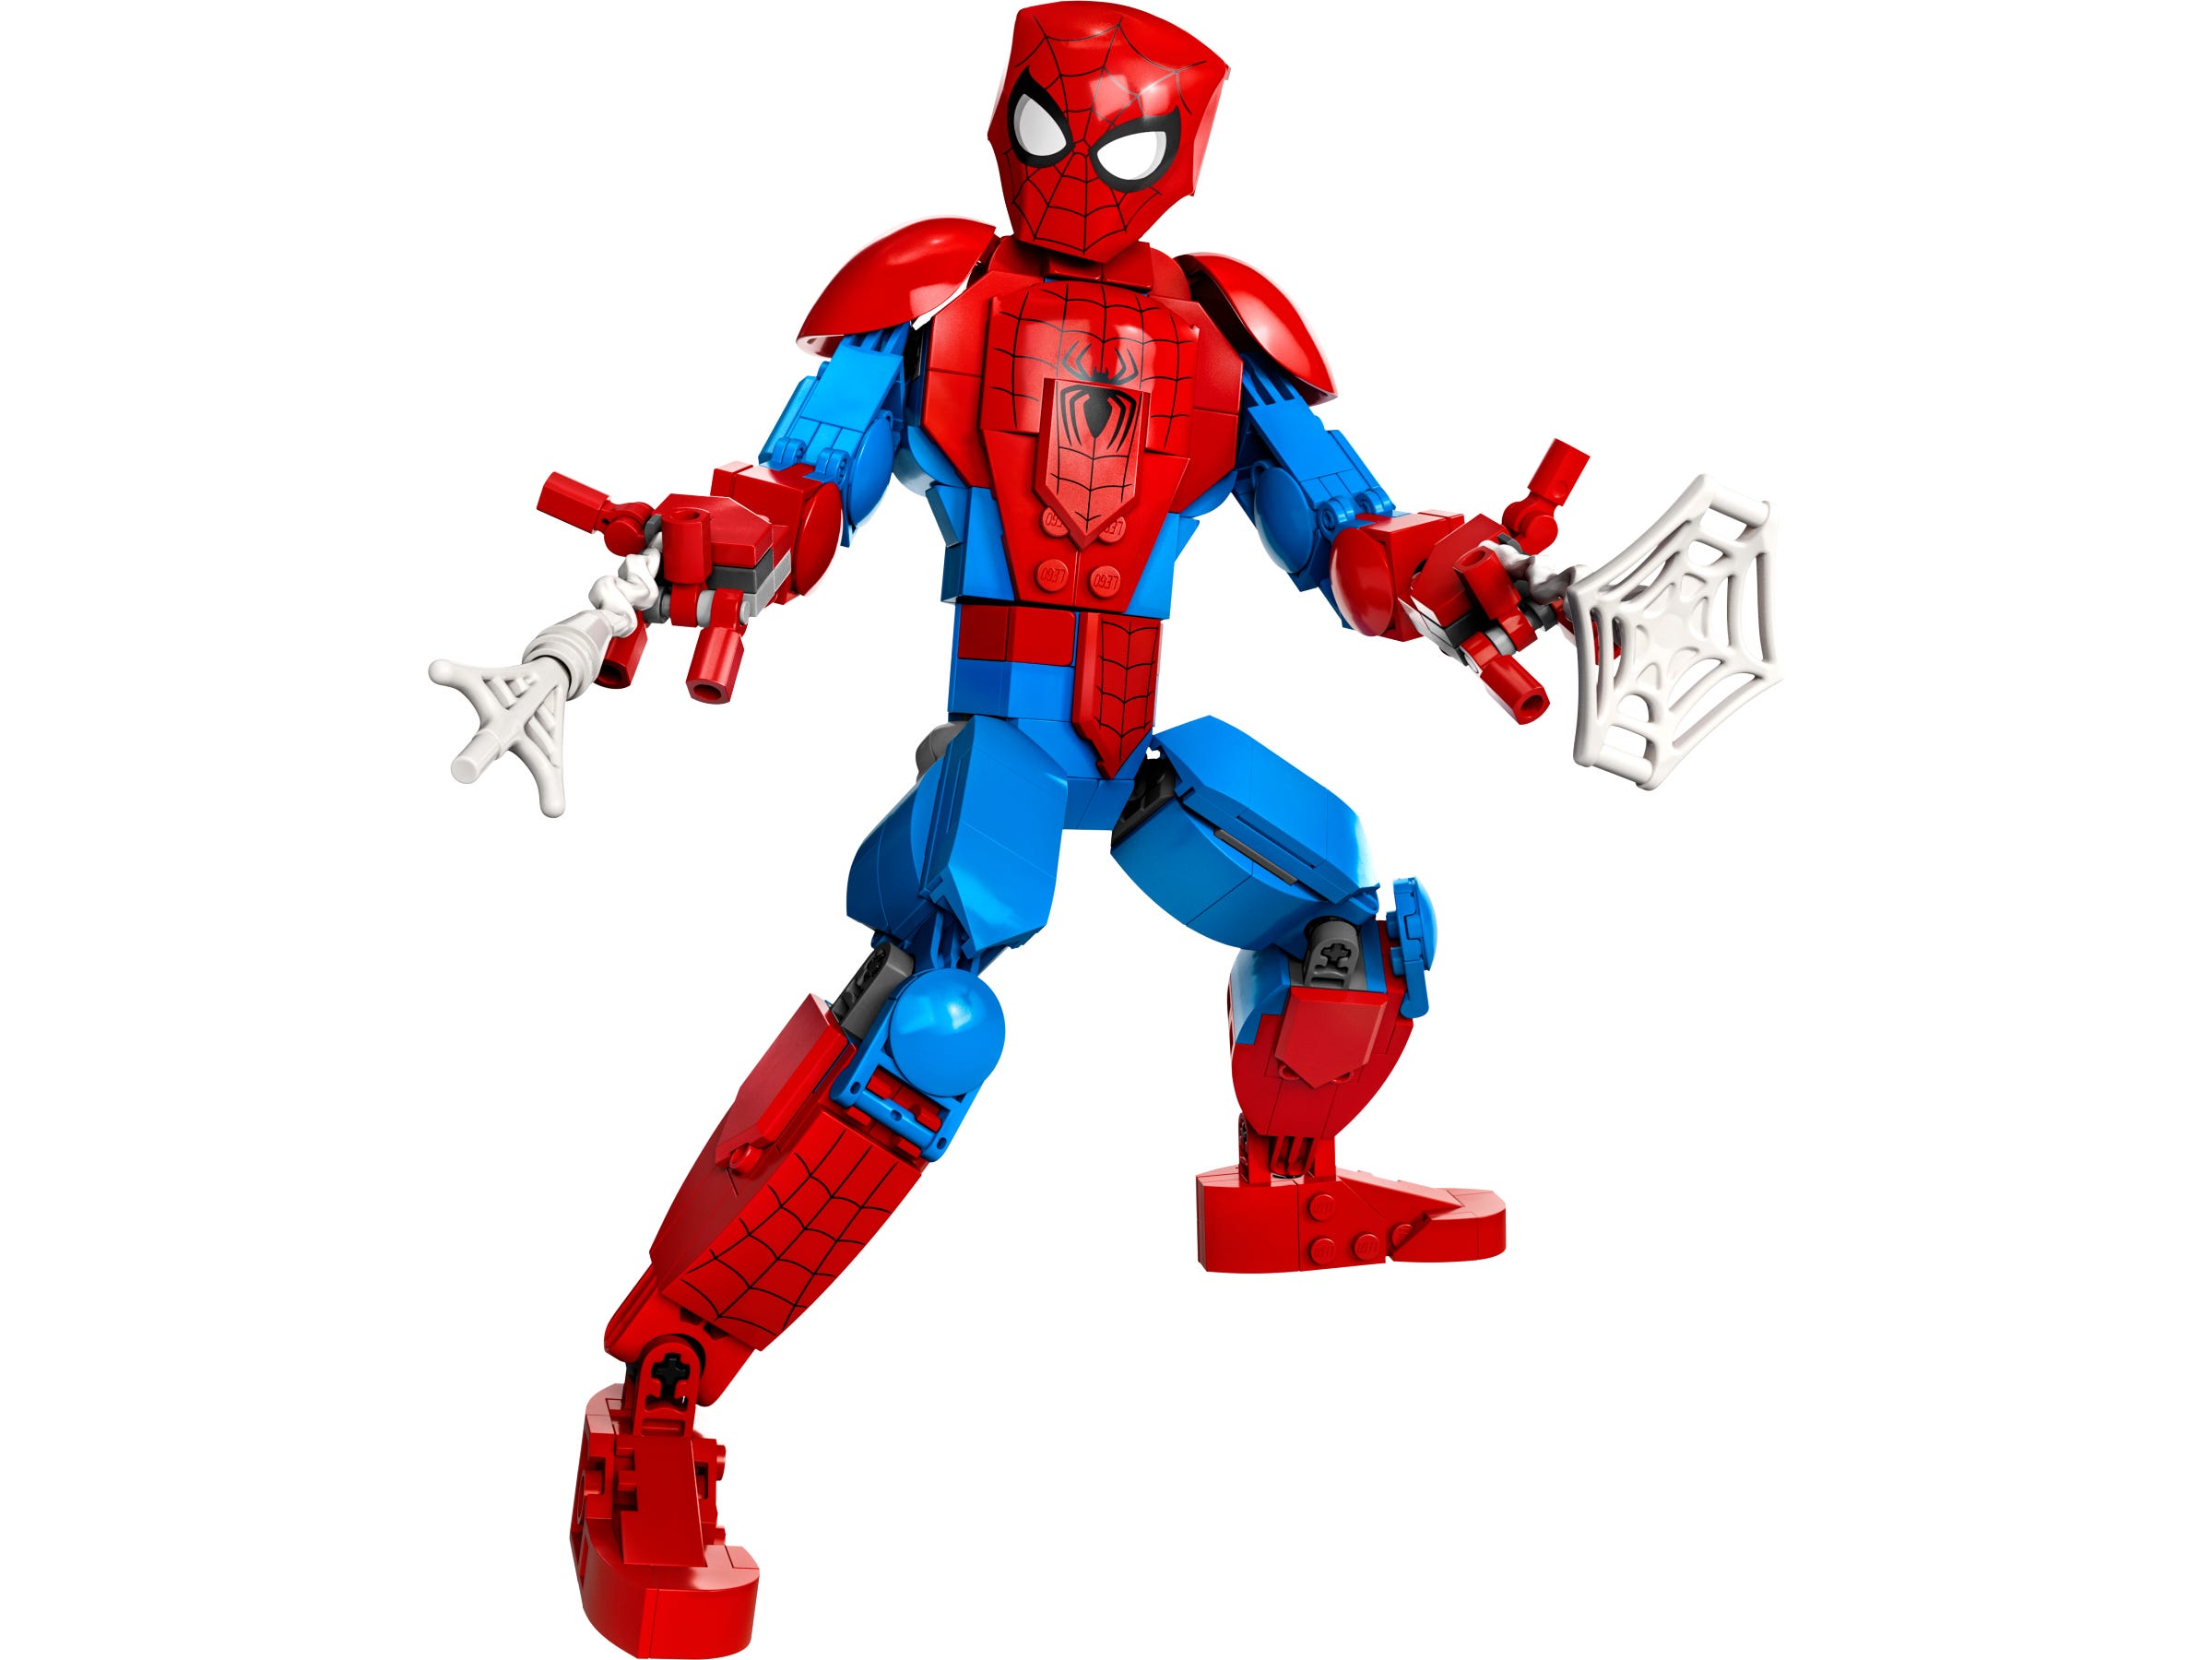 OfferteWeb.click 26-personaggio-di-spider-man